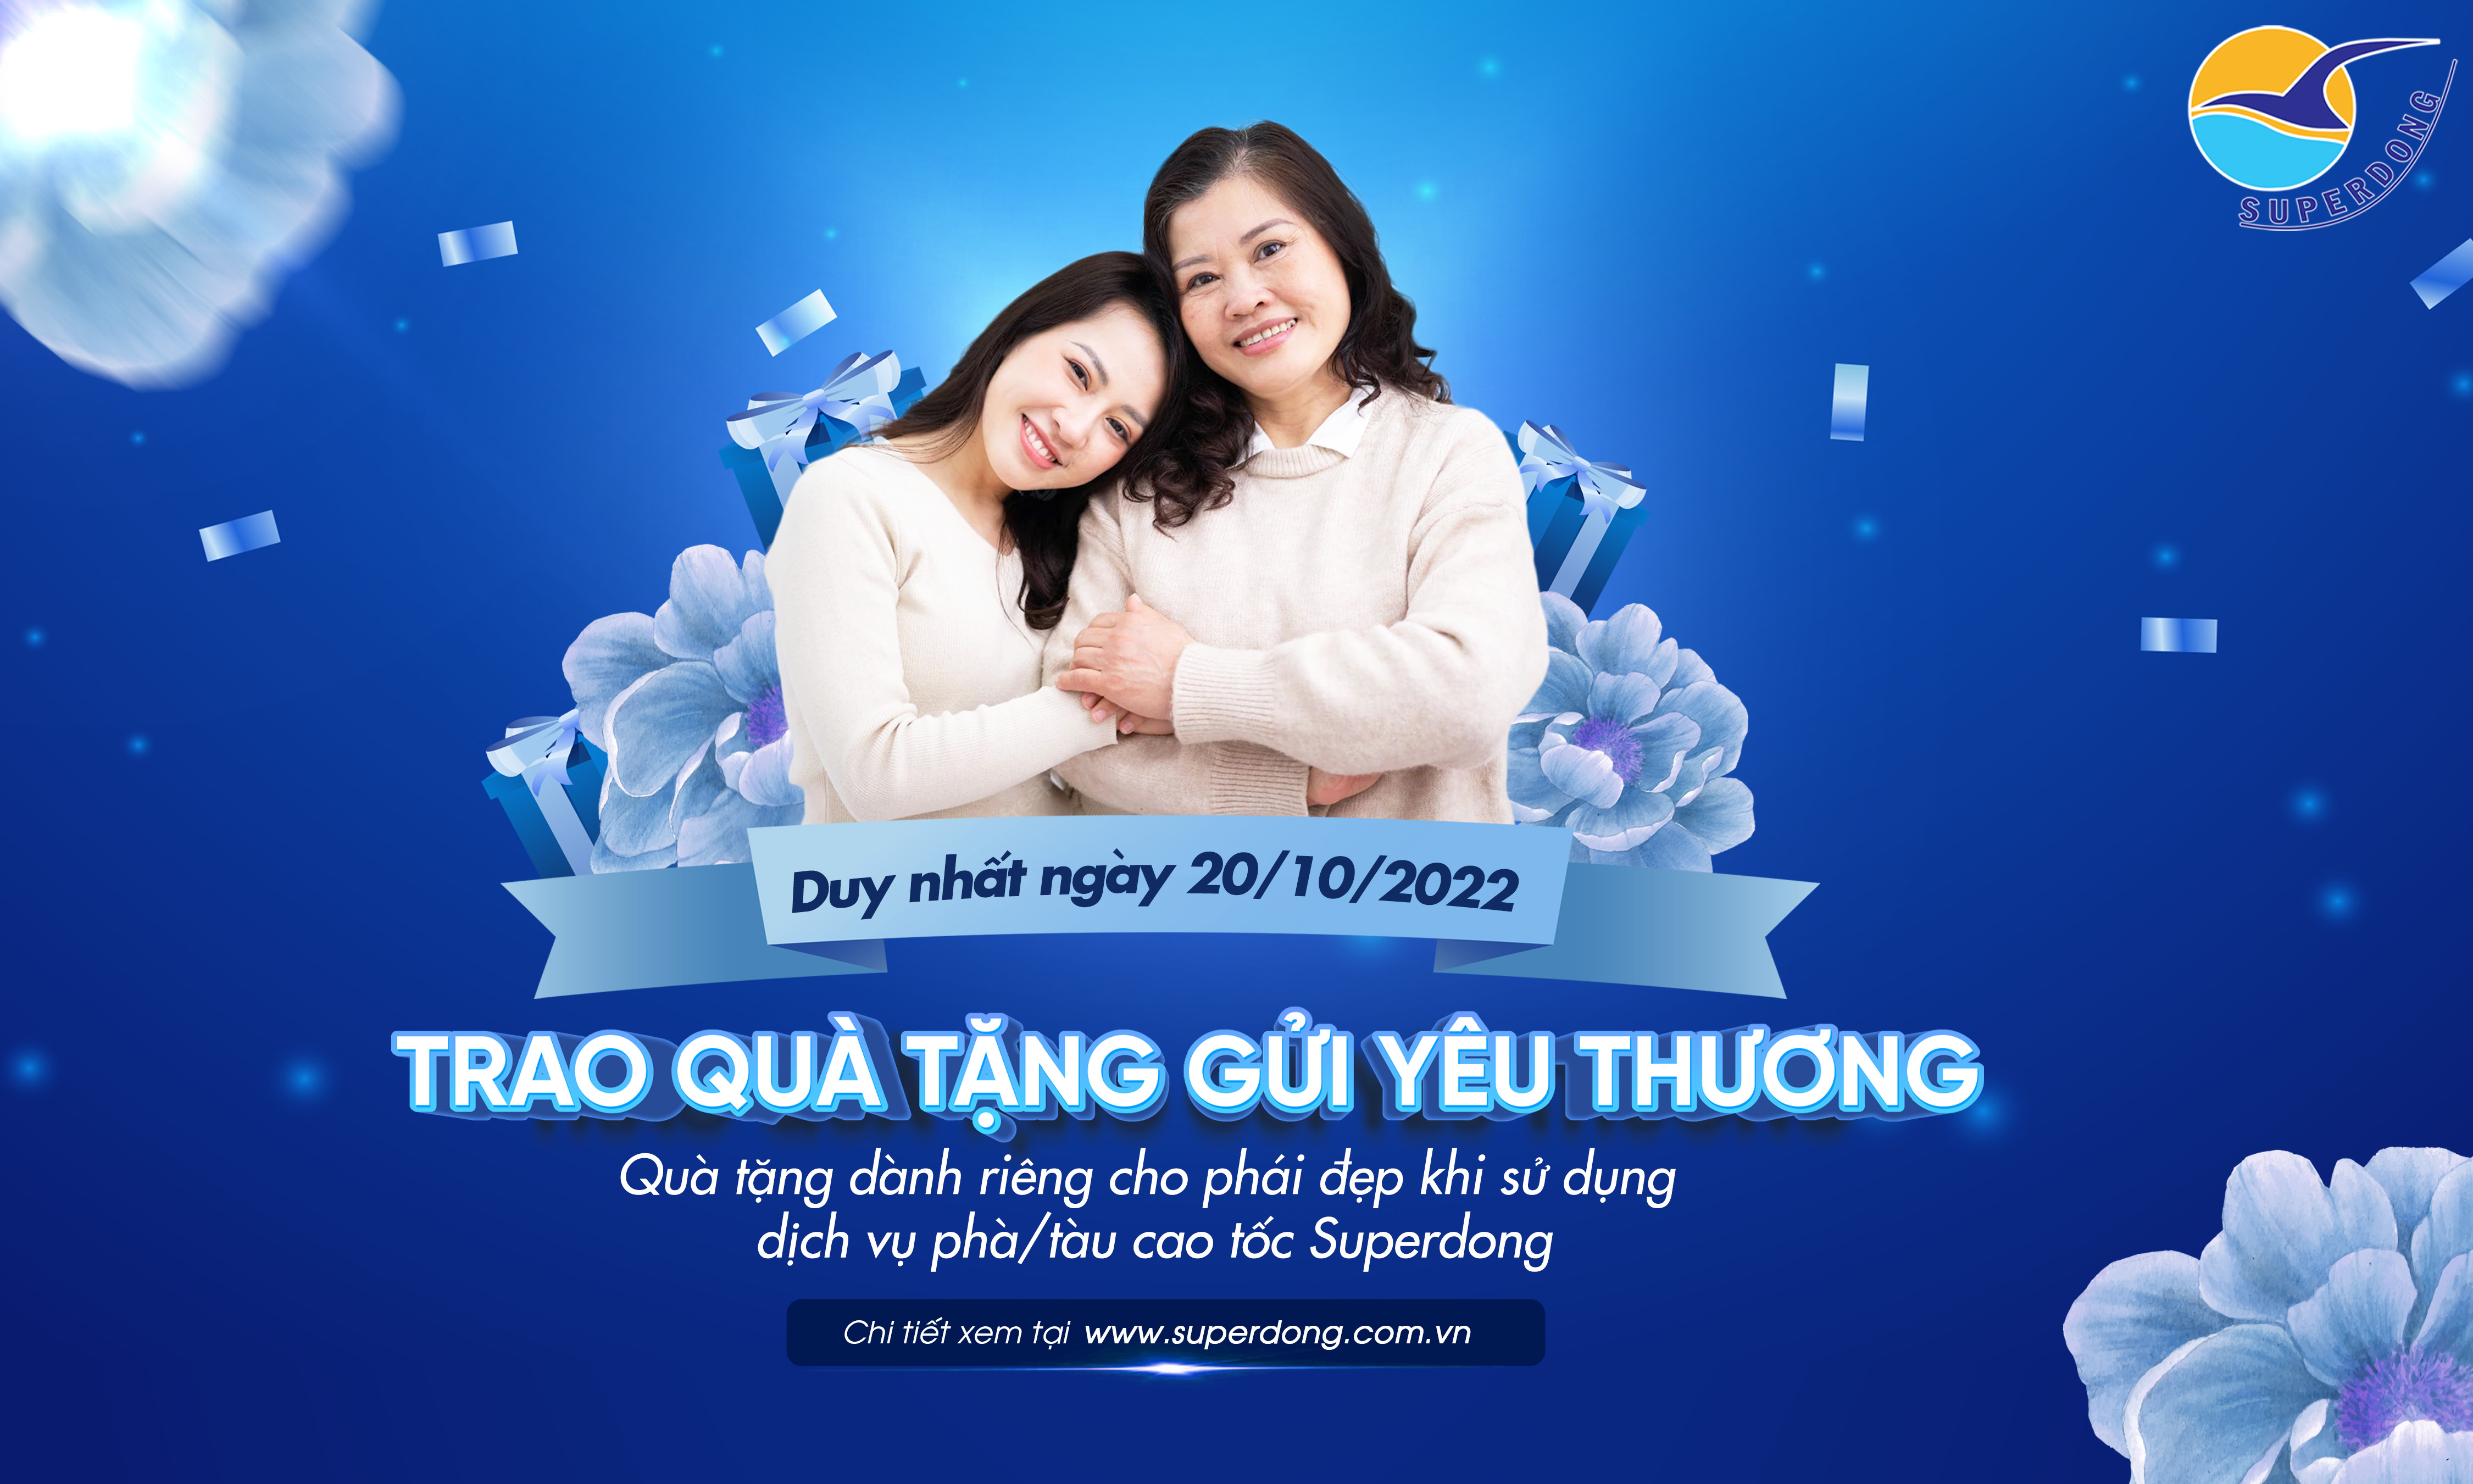 superdong: trao quà tặng – gửi yêu thương nhân dịp 20/10/2022